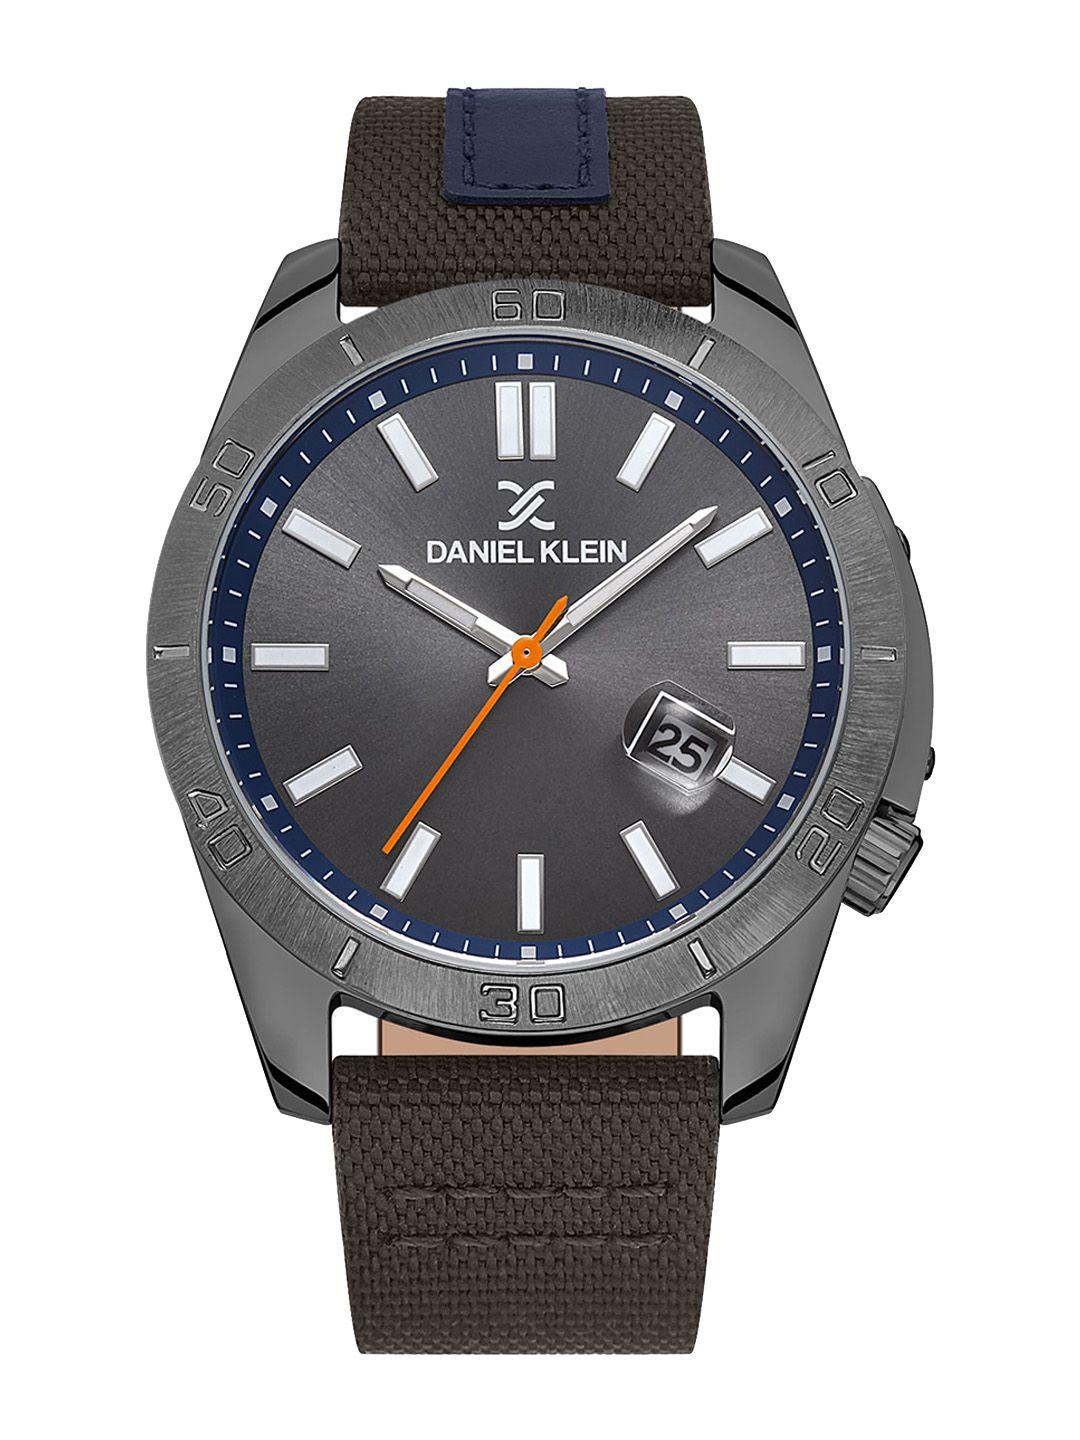 daniel klein men dial & leather textured straps analogue watch dk.1.13515-4